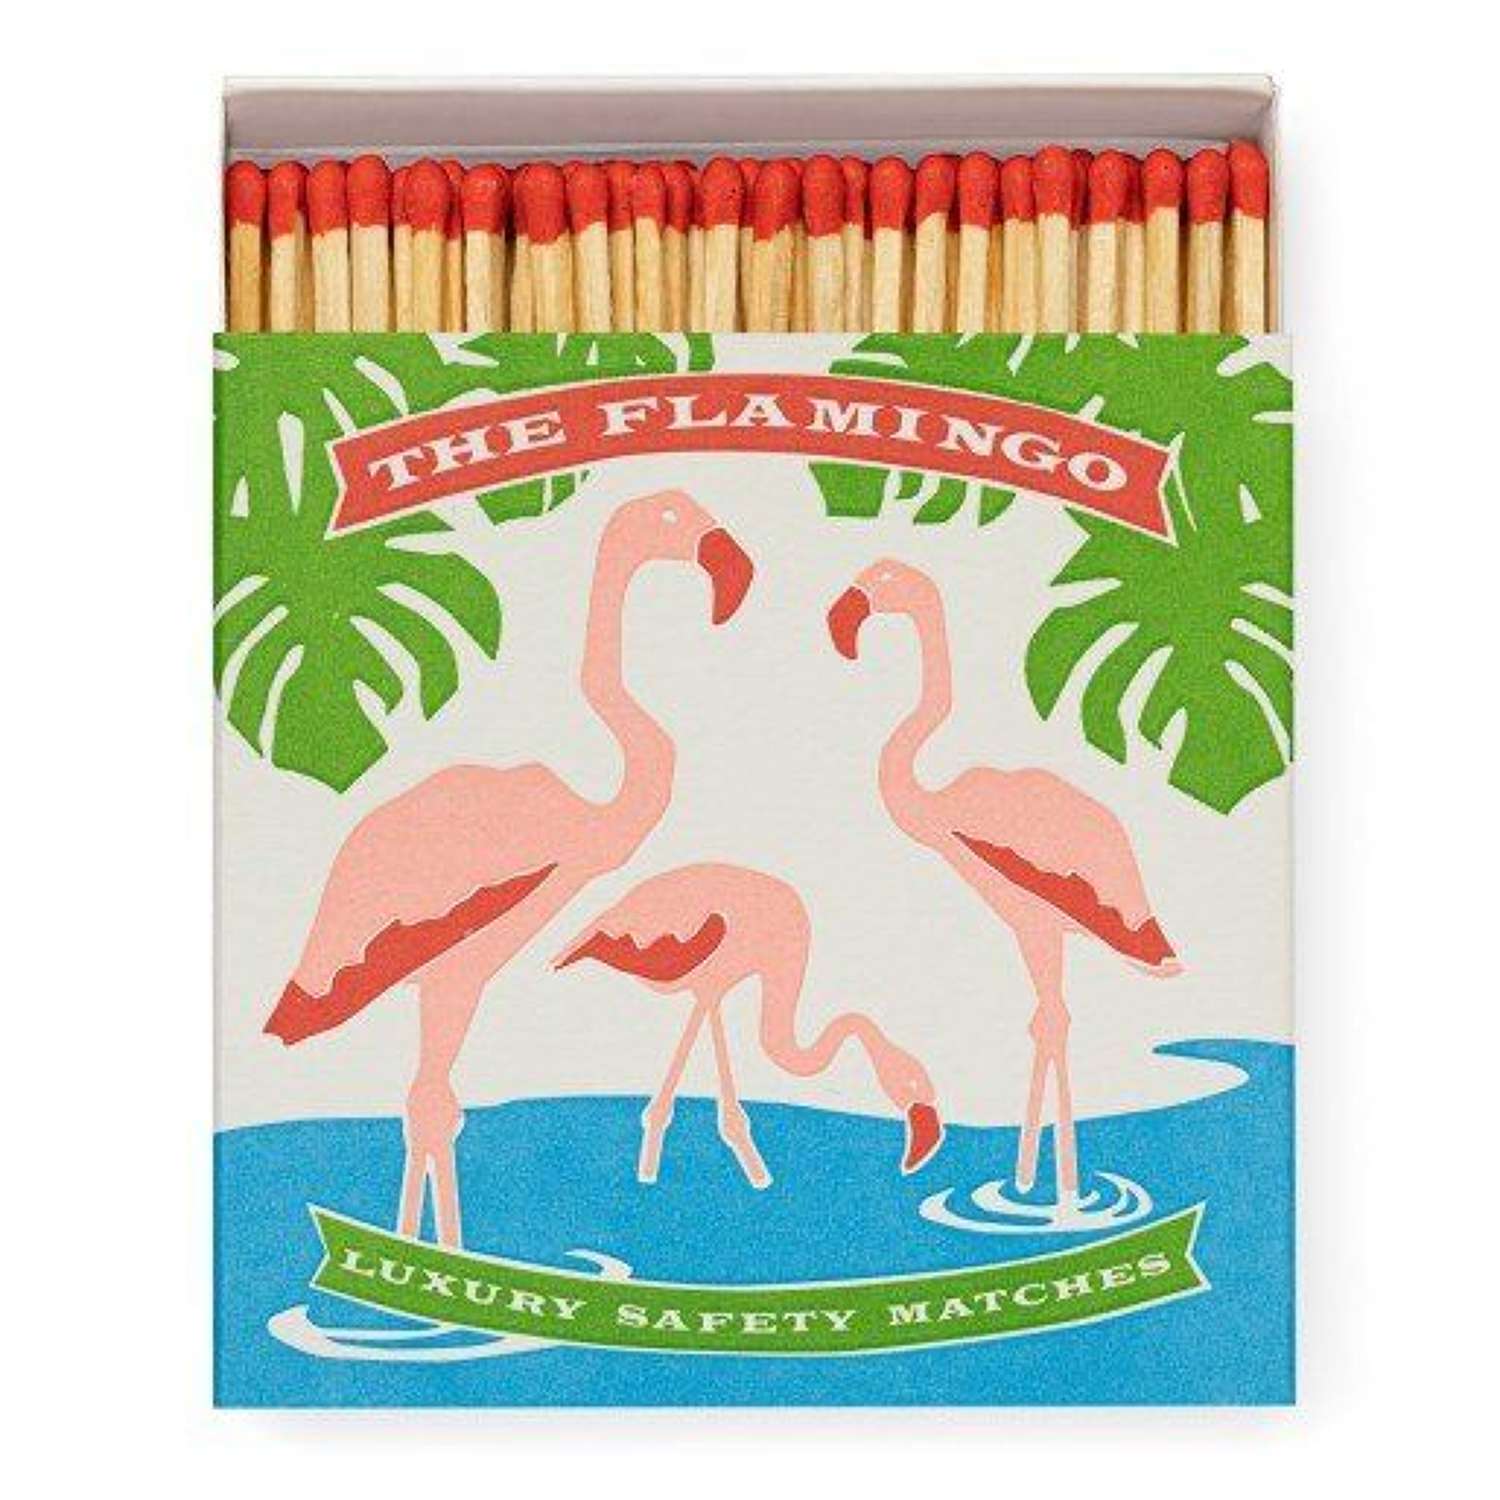 Archivist Flamingo Matches